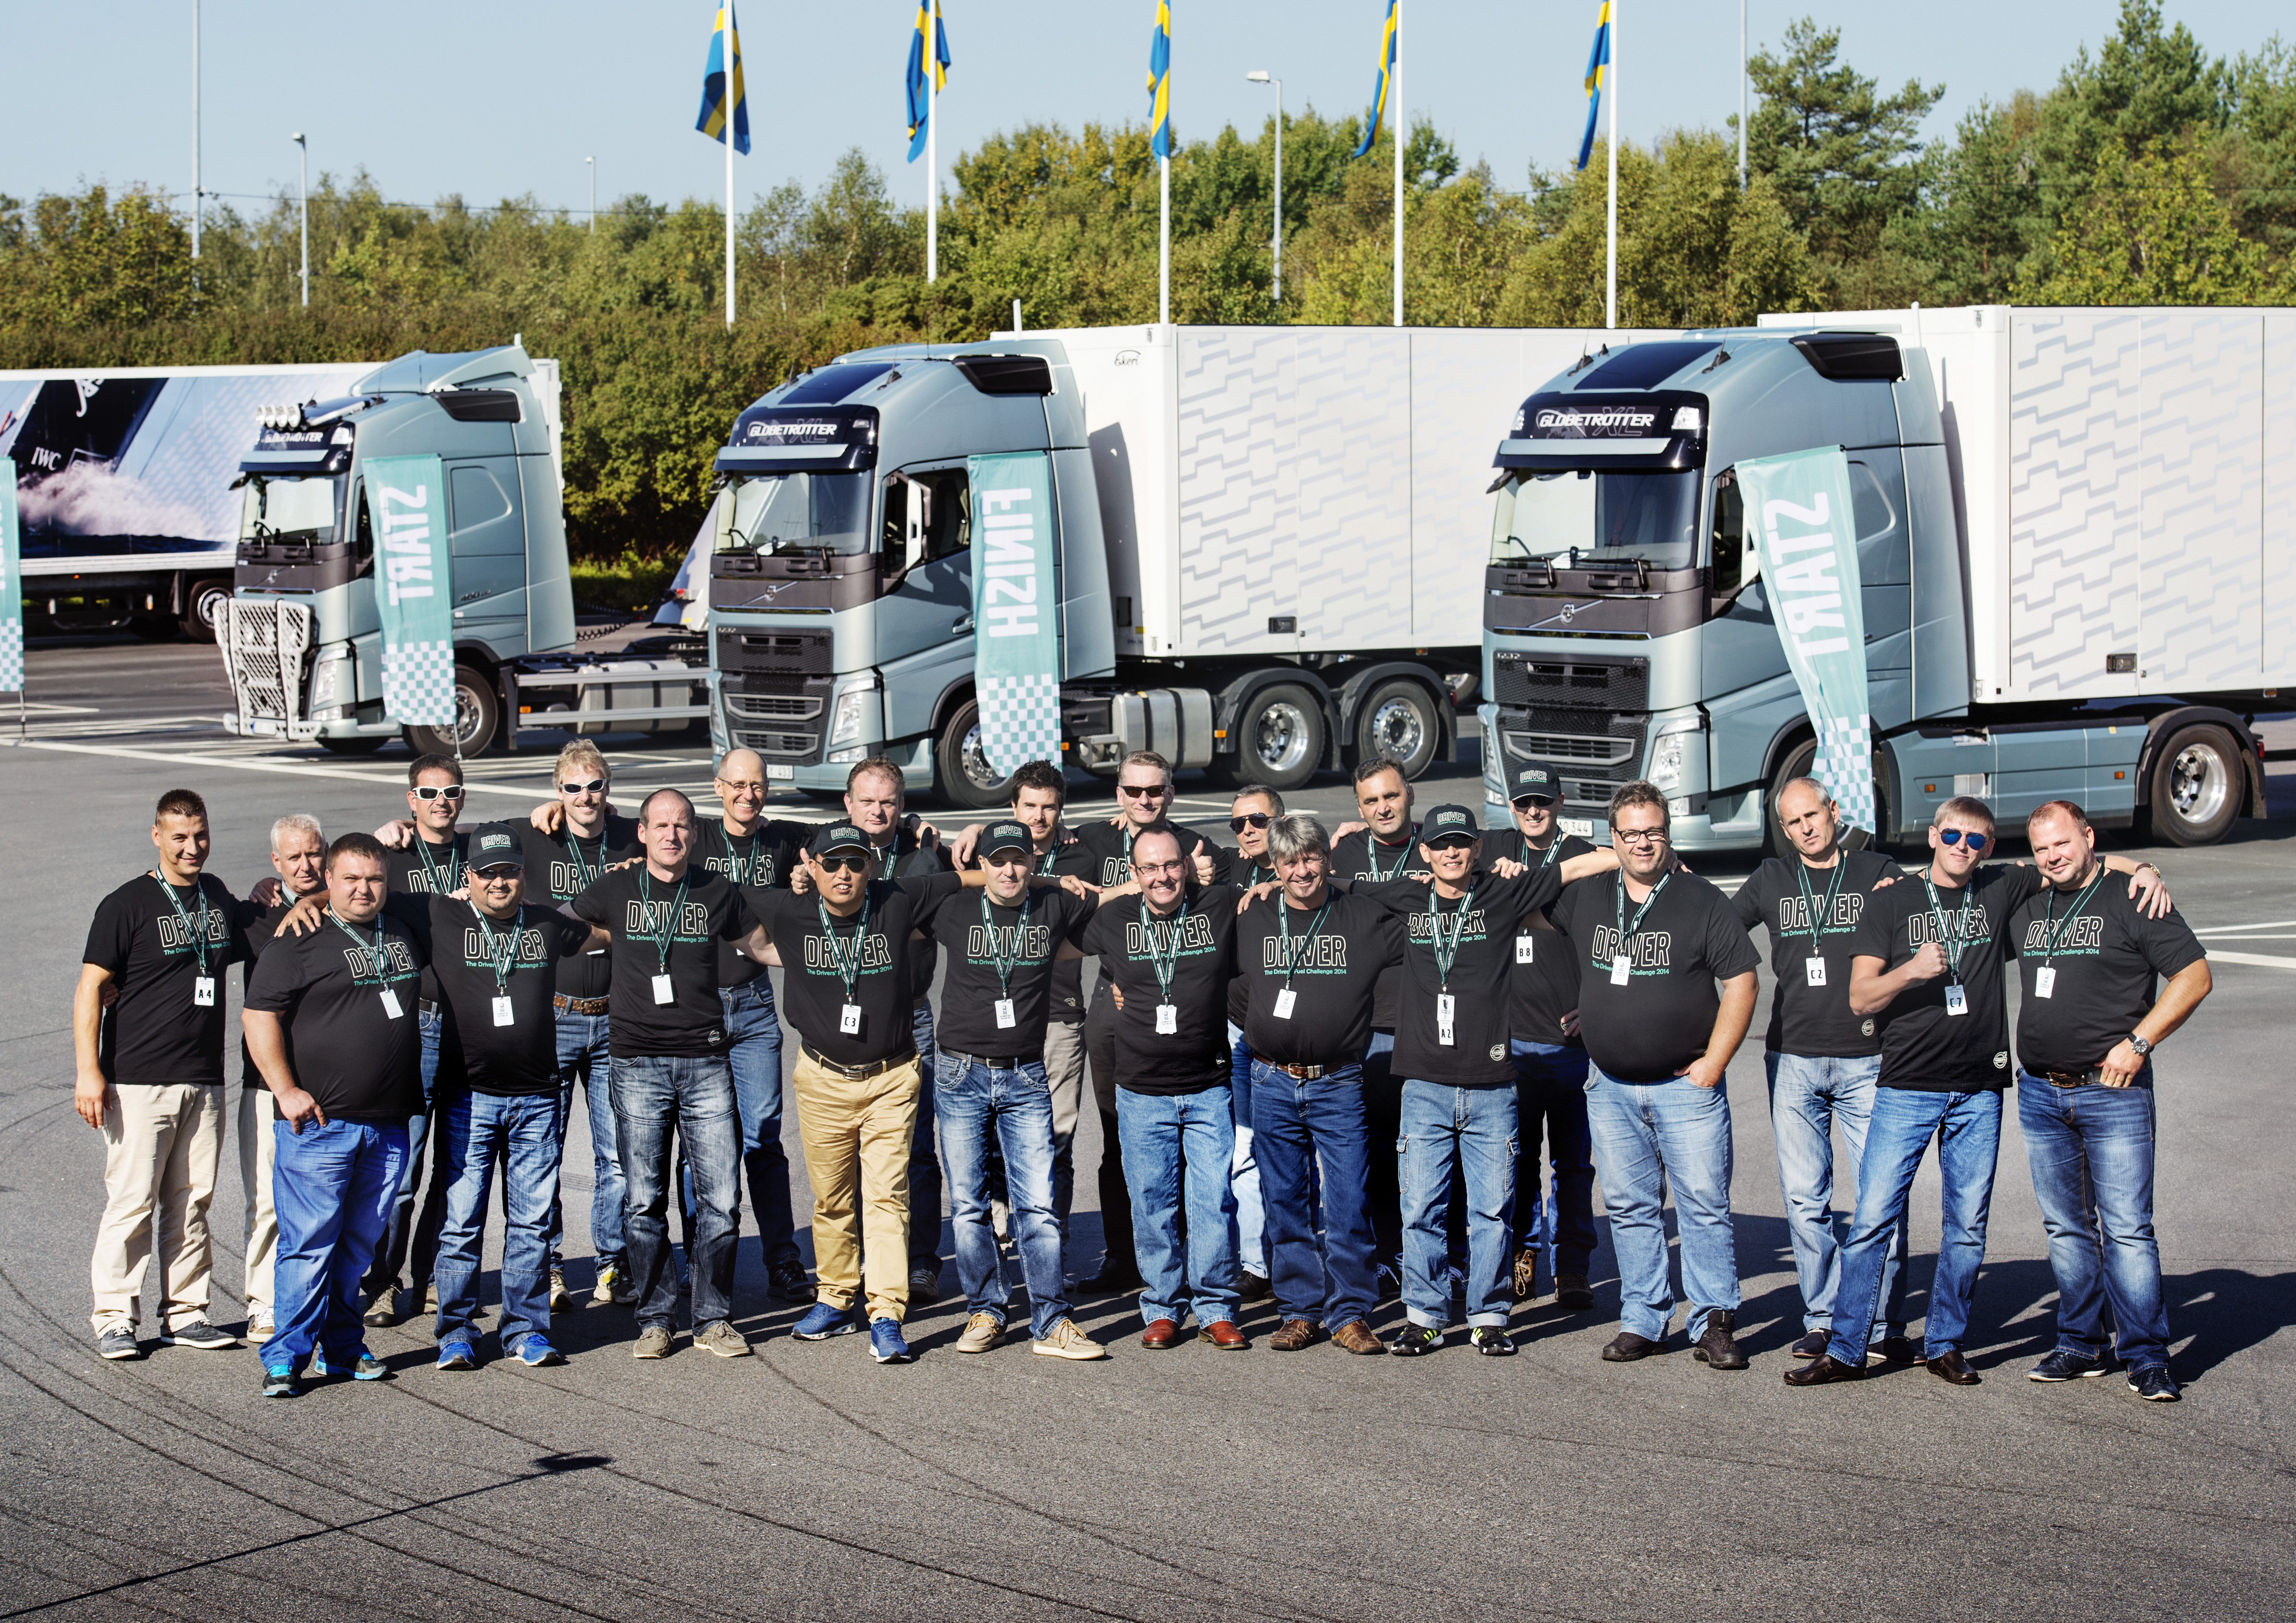 Održano finale Volvo “Drivers Fuel Challenge” u Geteborgu